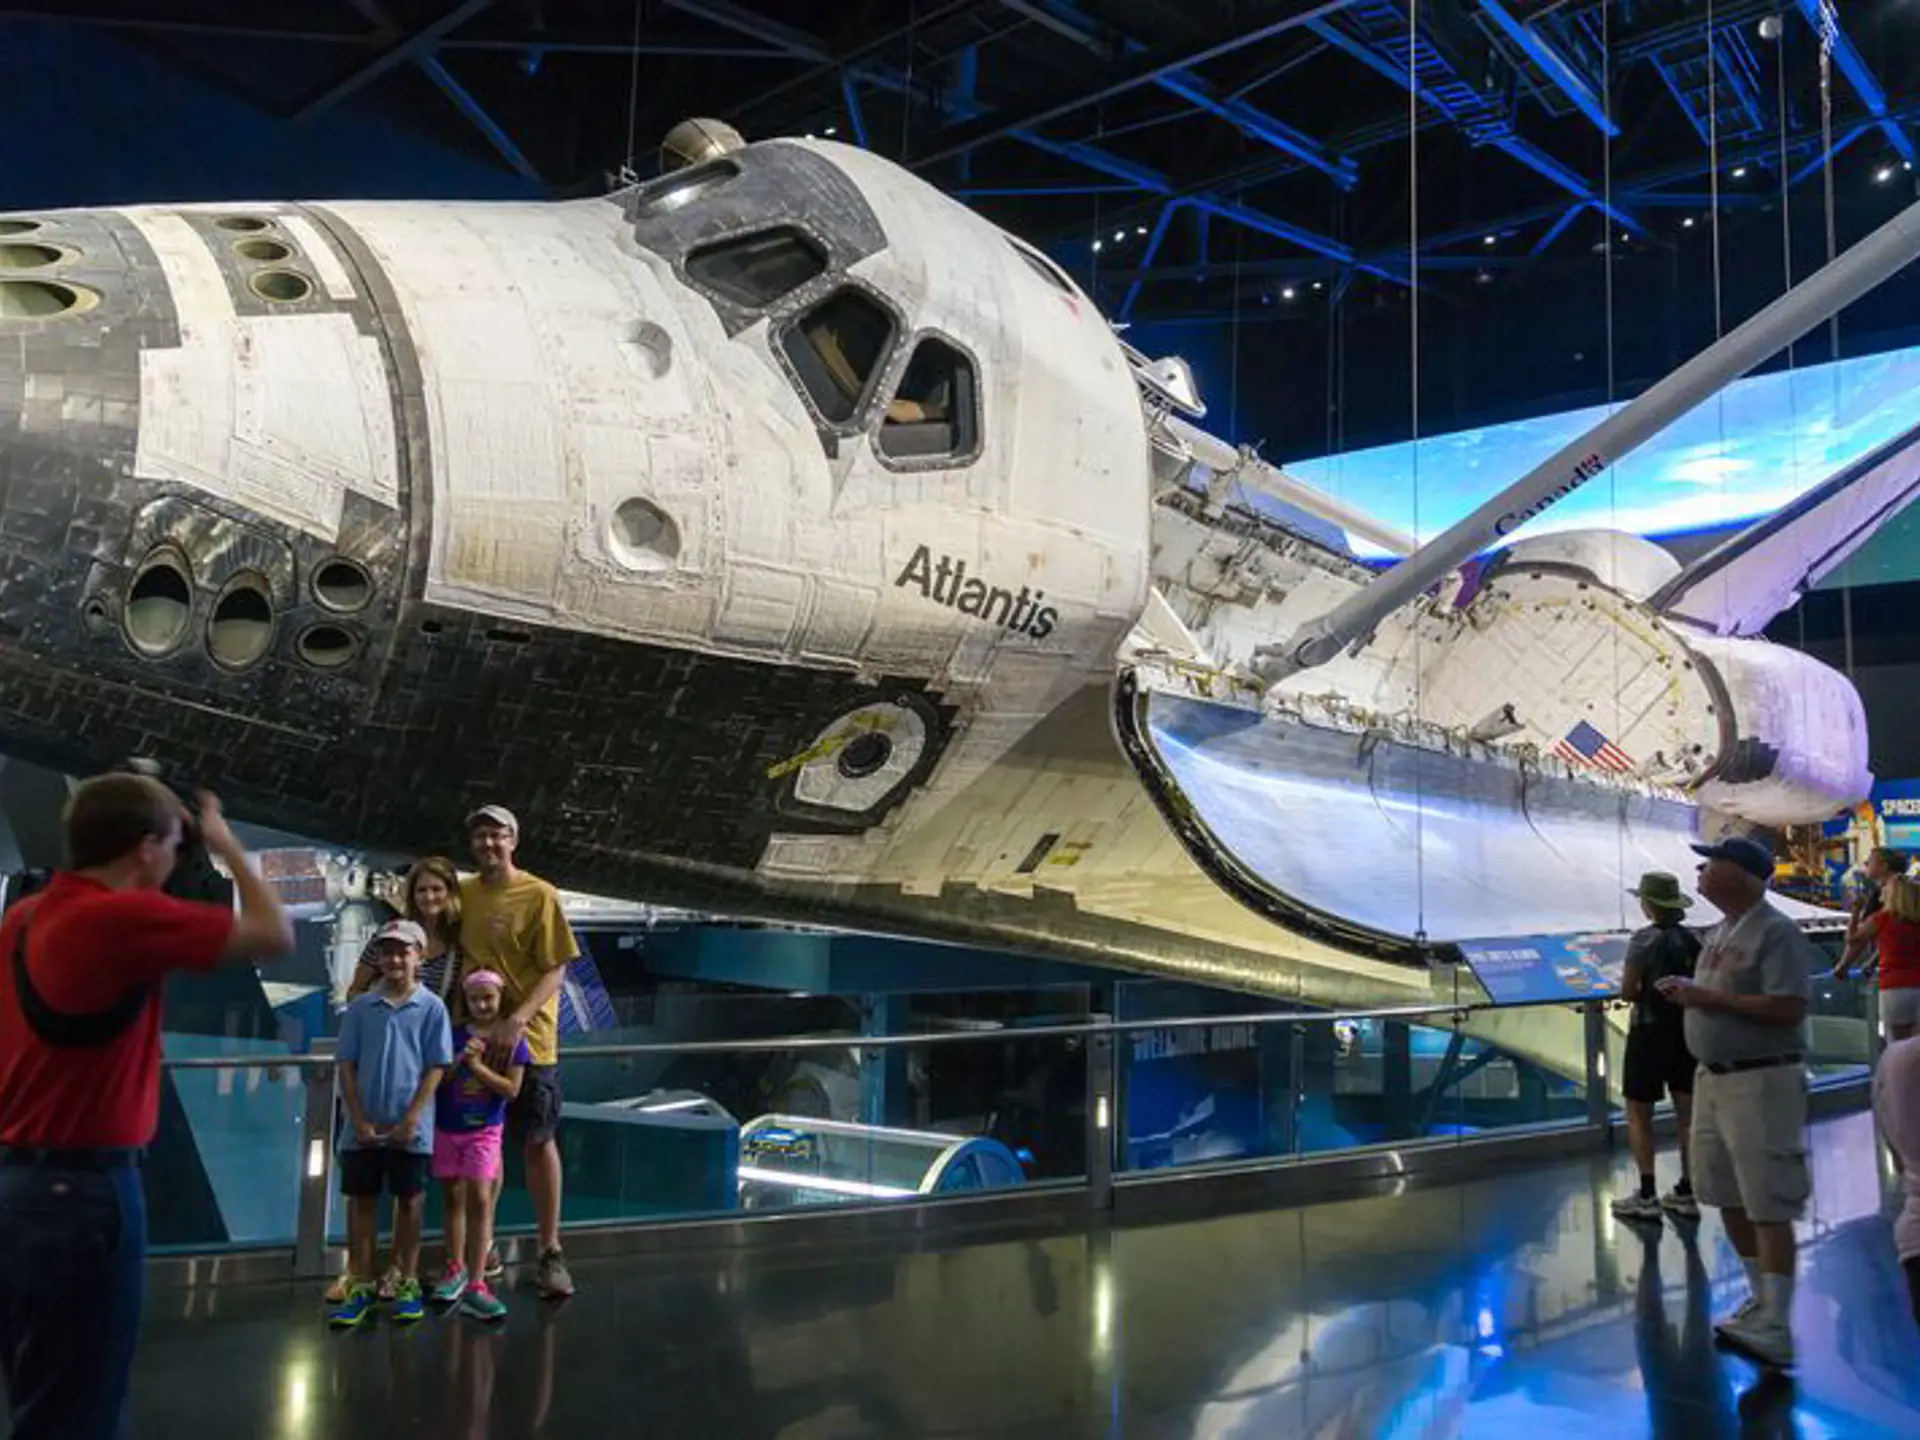 ORLANDO - Kennedy Space Center er en kæmpeoplevelse for børn såvel som voksne, Check Point Travel